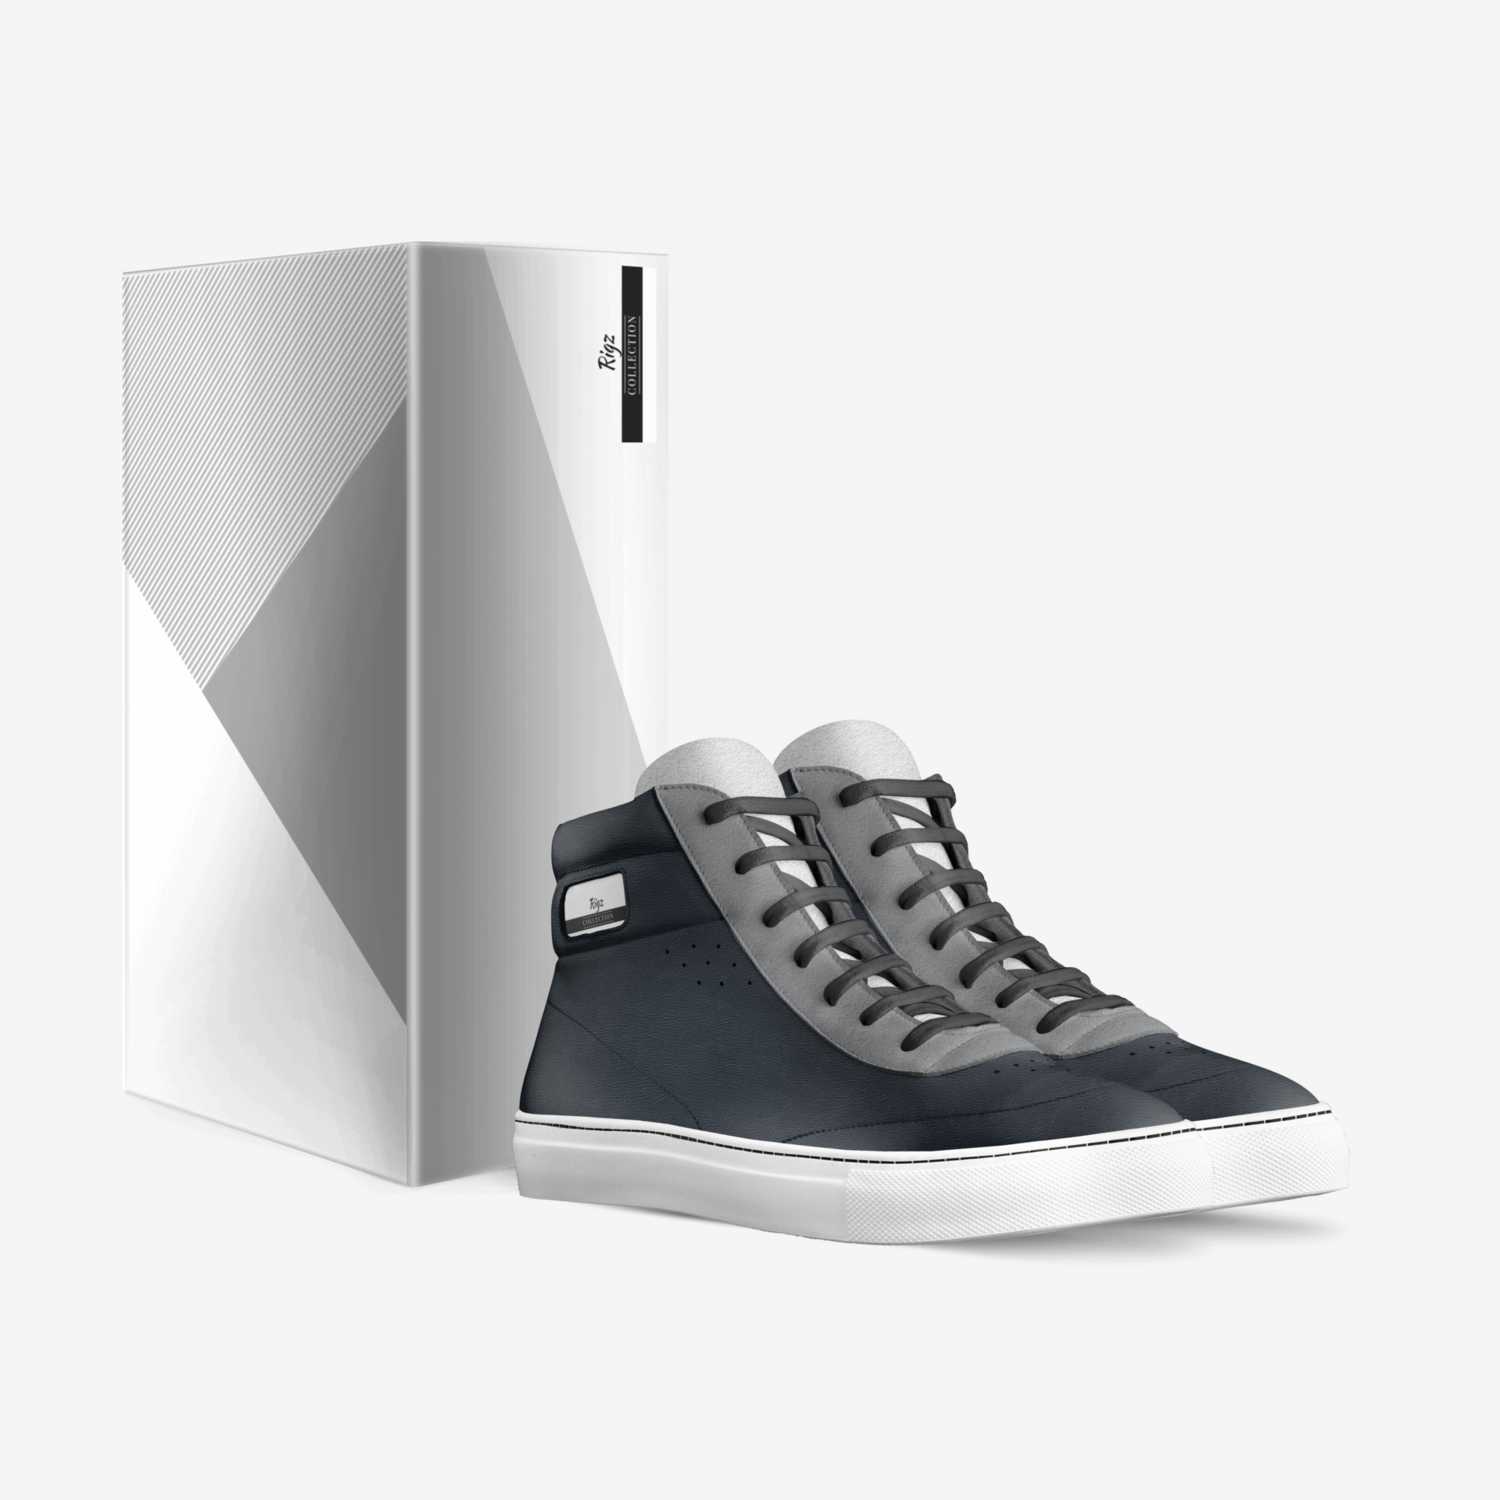 Rigz custom made in Italy shoes by Rigoberto De Los Rios | Box view